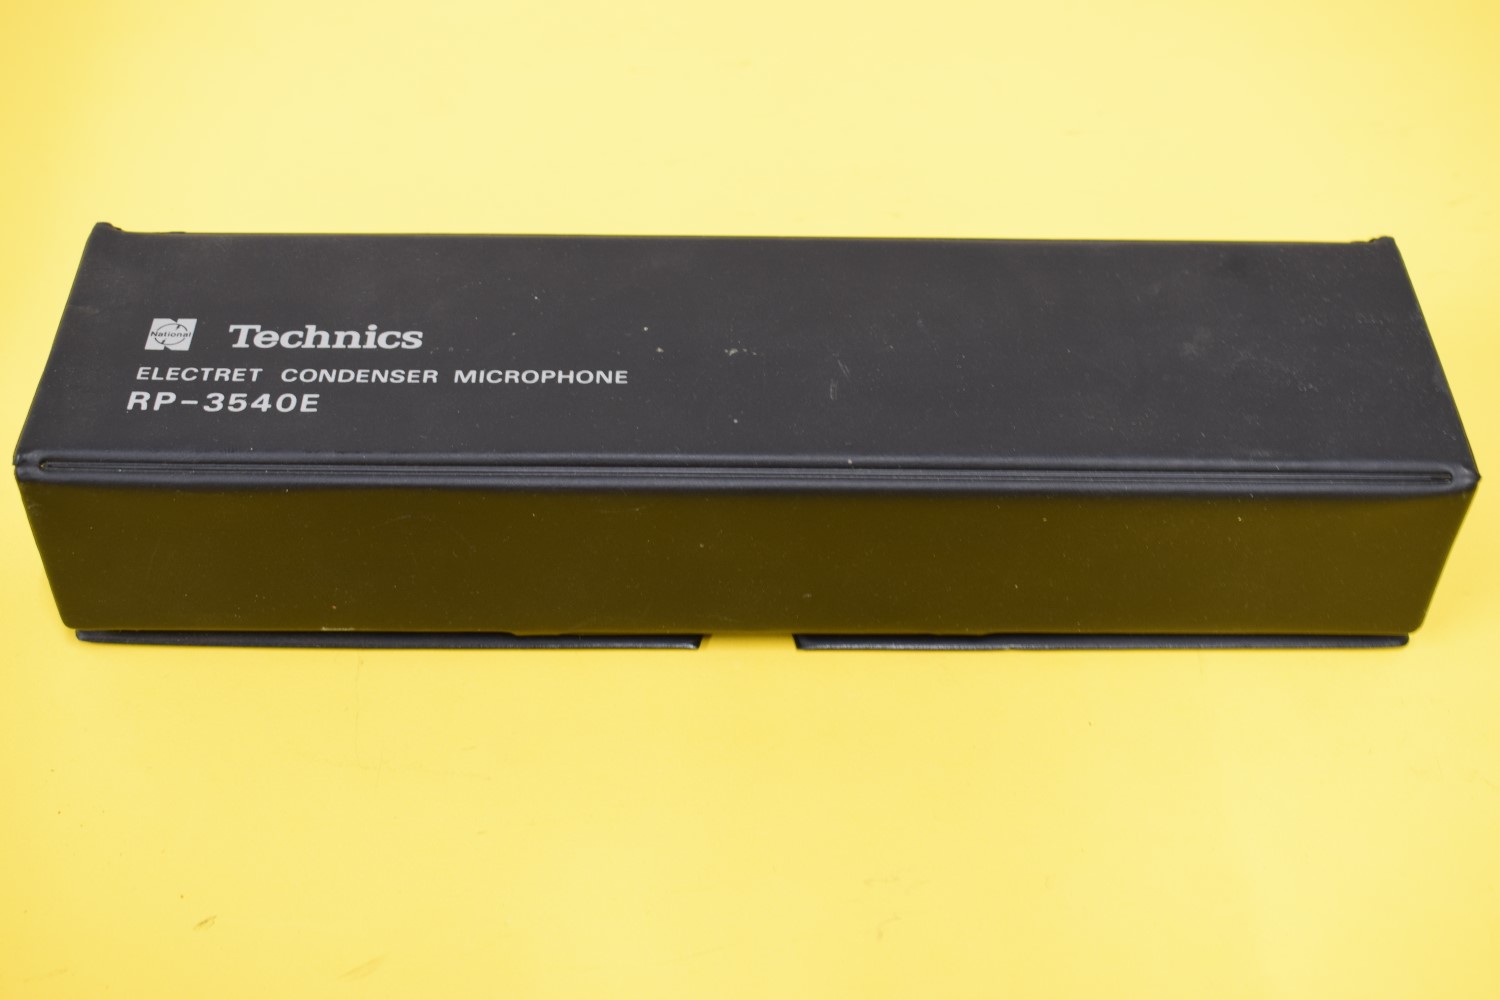 Technics RP-3540E Microphone – In original Box